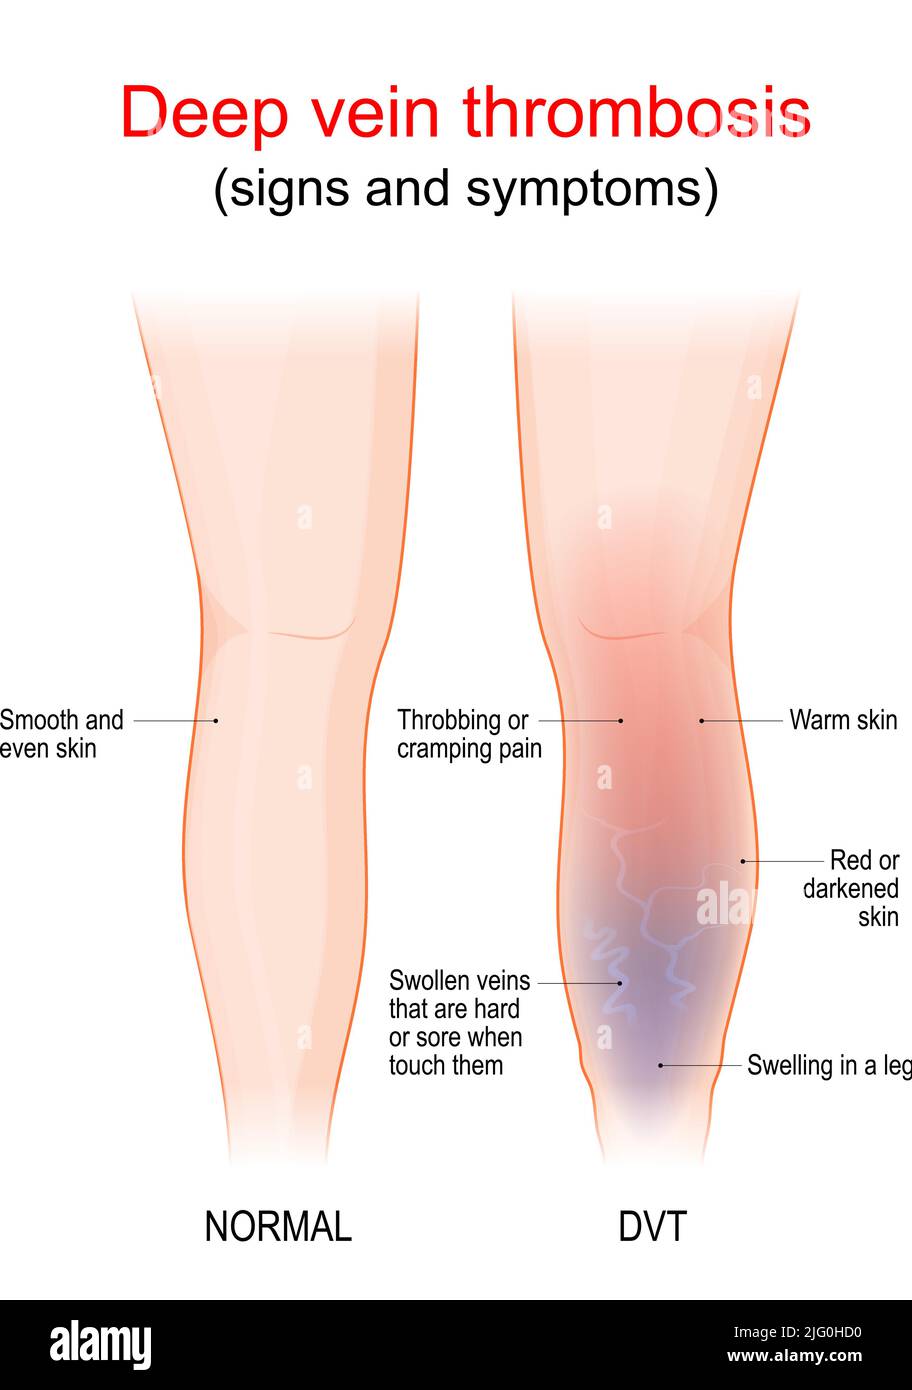 la thrombose veineuse profonde est un caillot de sang dans une veine, habituellement la jambe. Une jambe et une jambe saines avec un TVP. Signe et symptômes de thrombophlébite. Vaisseau sanguin Illustration de Vecteur